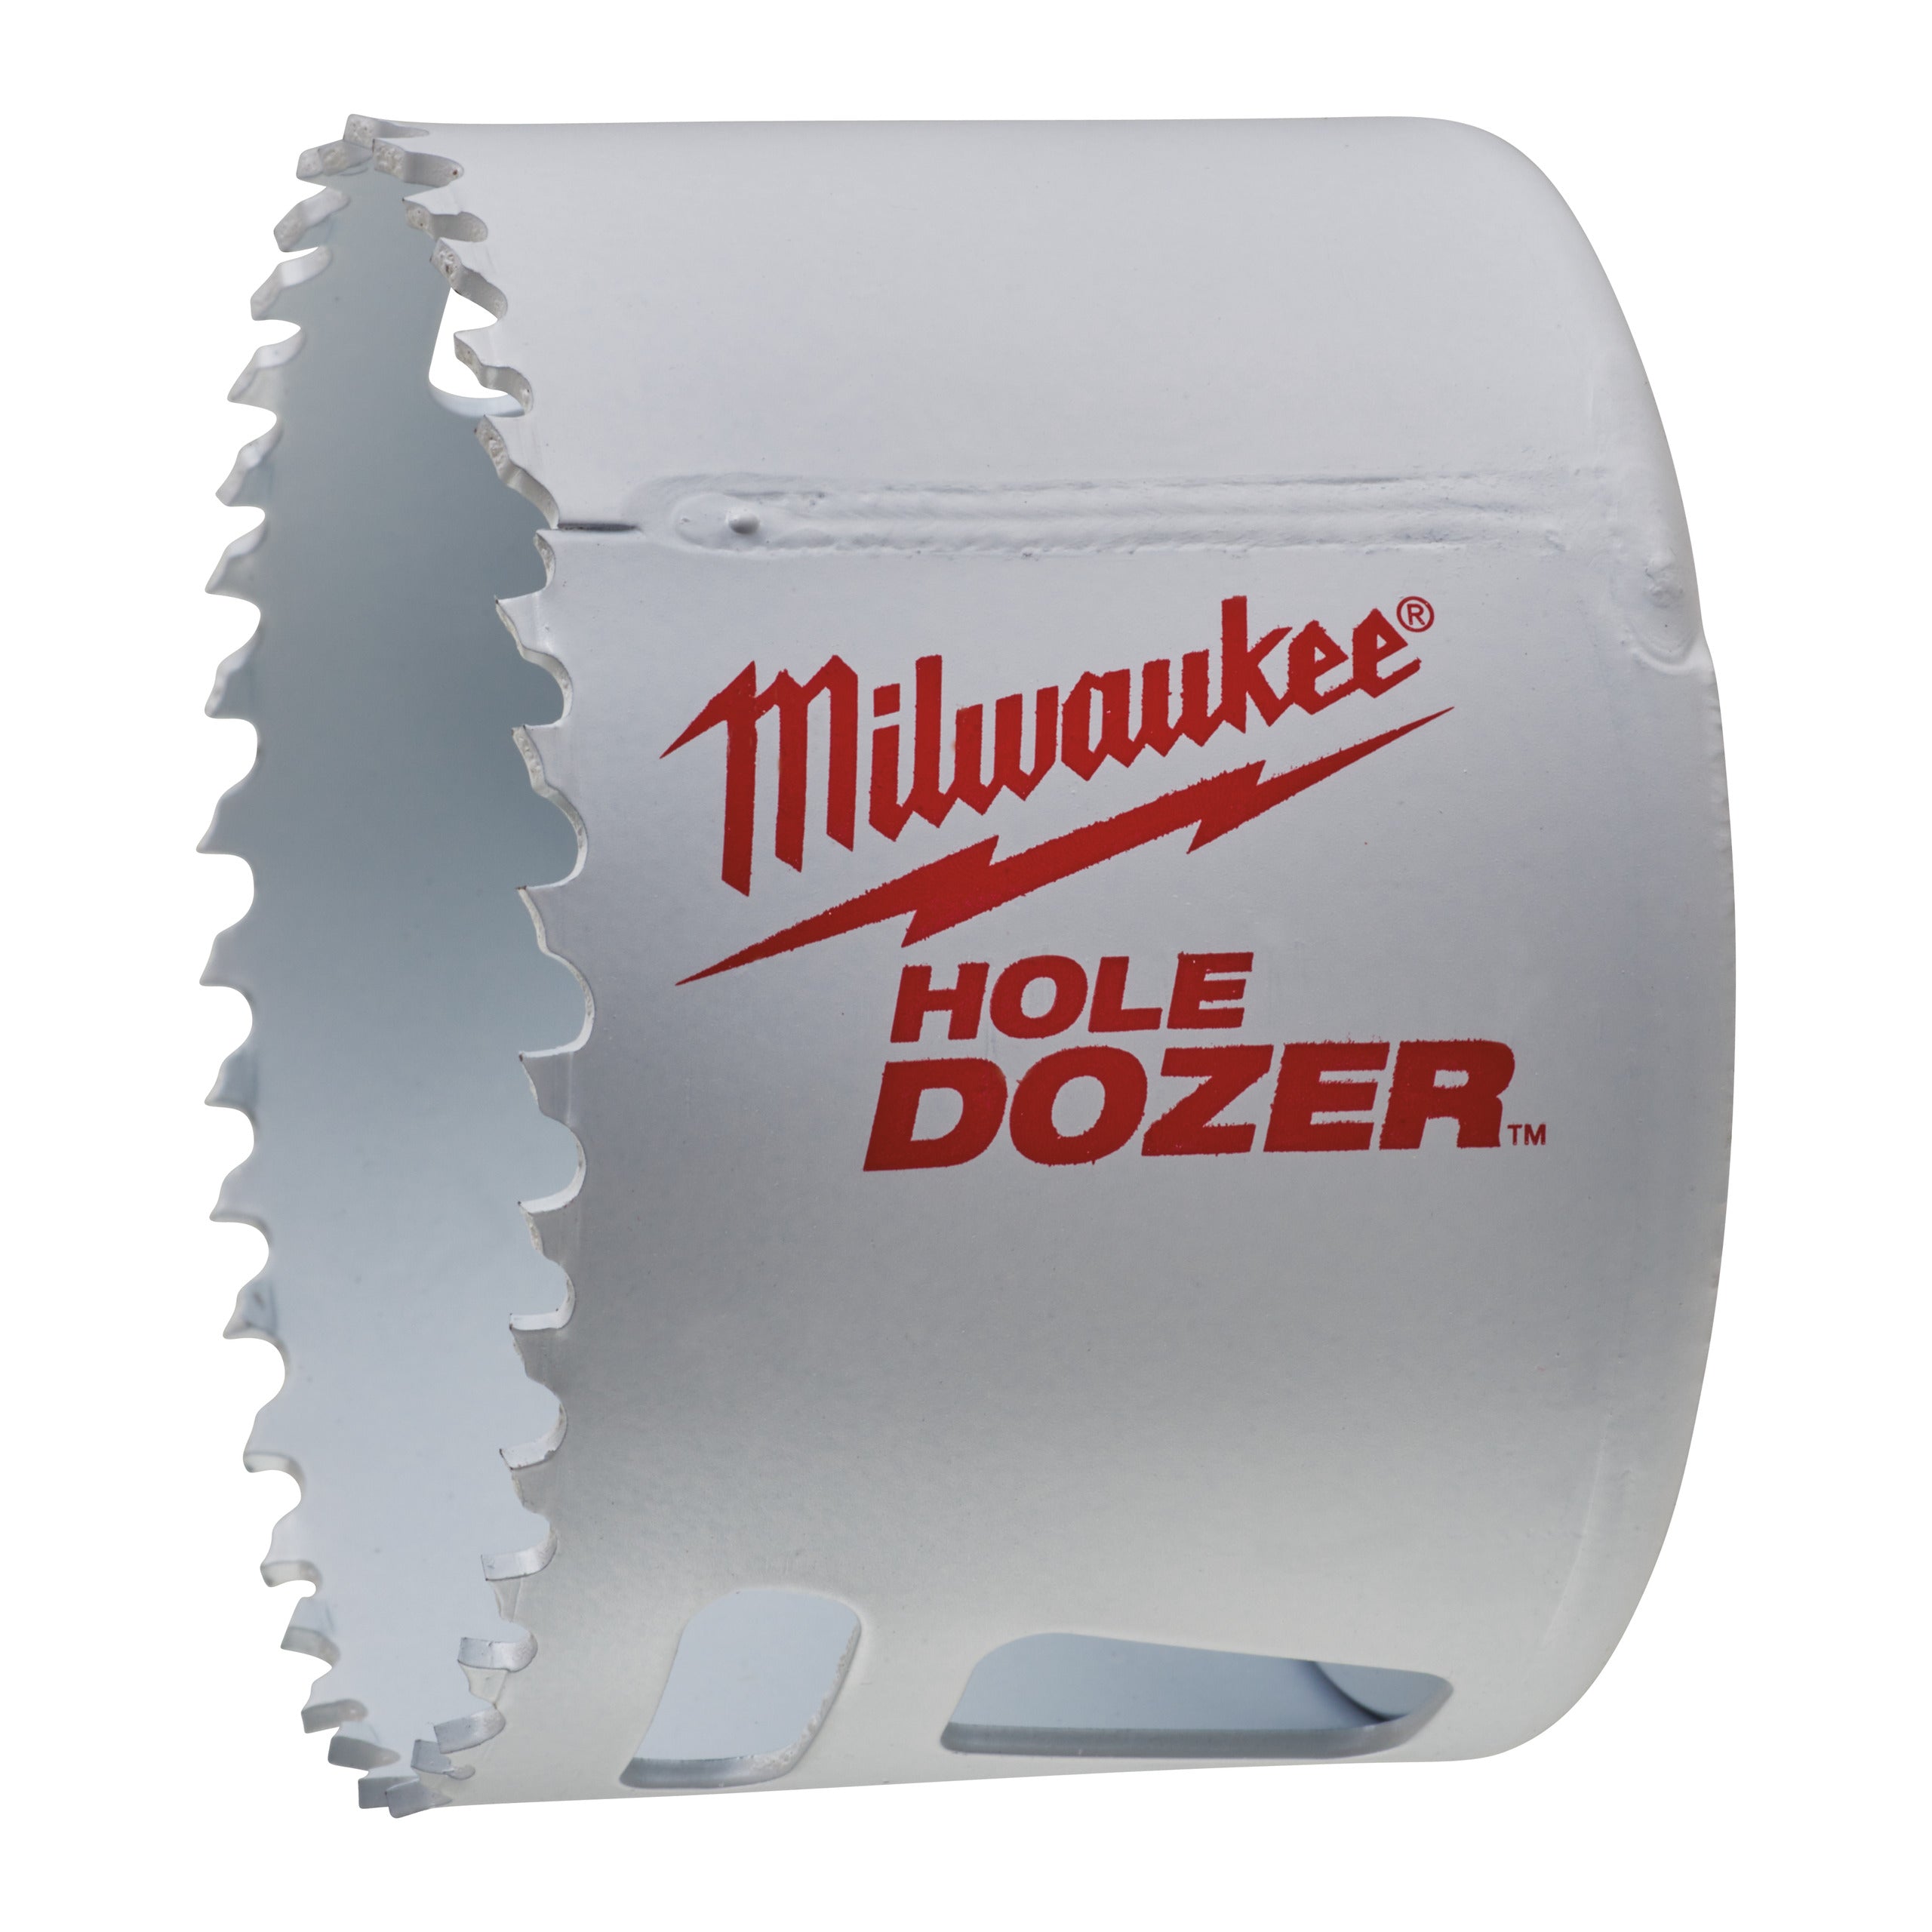 Carotă Milwaukee HOLE DOZER™ bi-metal Ø70 mm 49560163